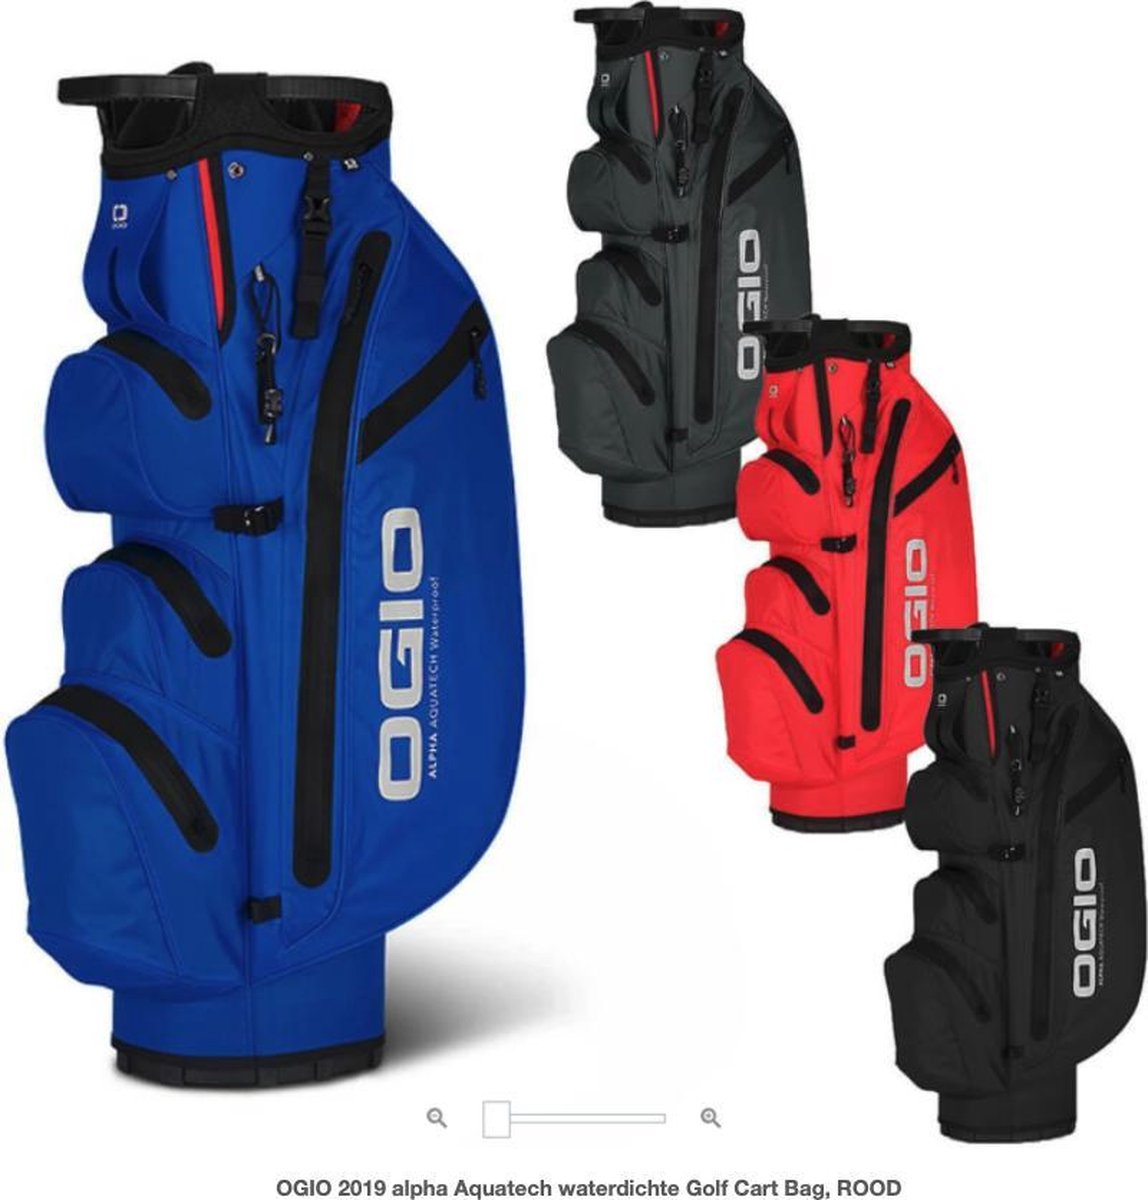 OGIO 2019 Golf Cart Bag, ROOD bol.com